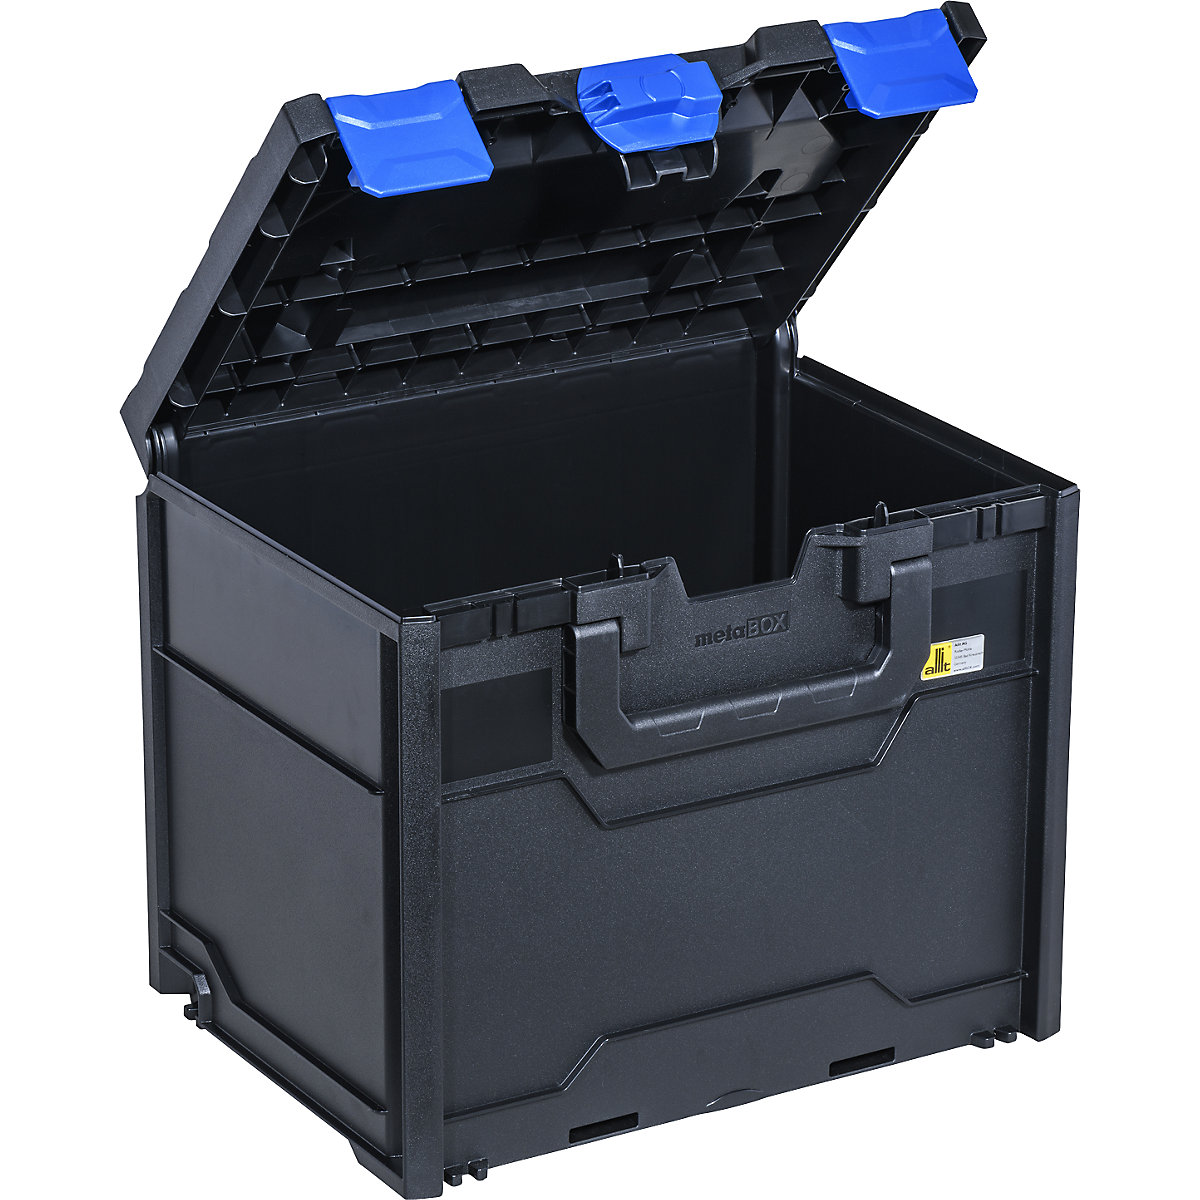 Transport- und Aufbewahrungsbox, schwarz/blau, ABS, Außen-LxBxH 396 x 296 x 340 mm